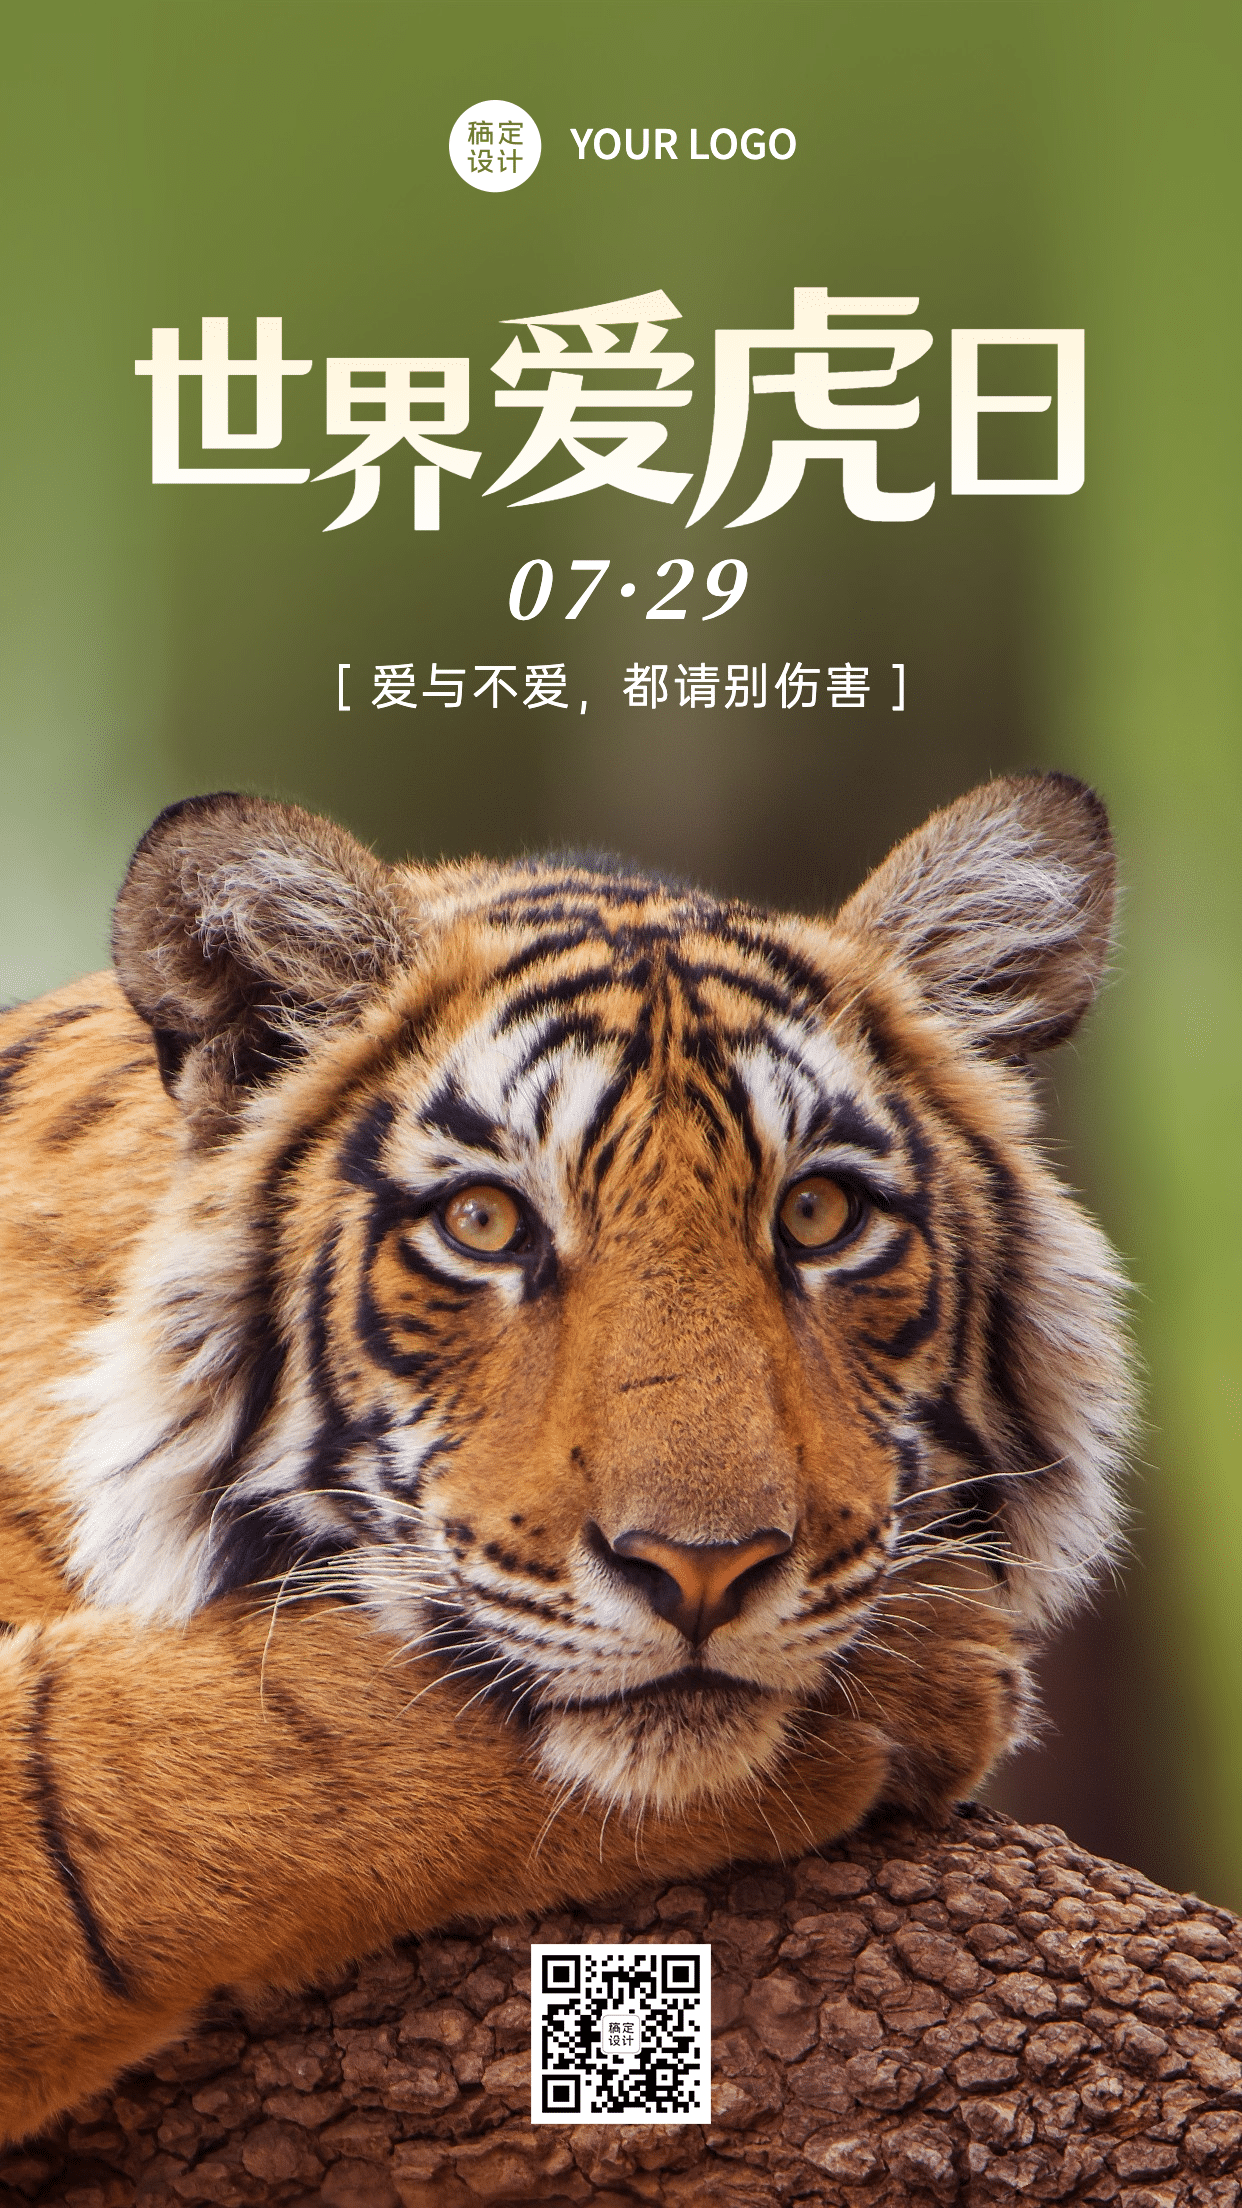 世界爱虎日保护动物宣传实景手机海报预览效果